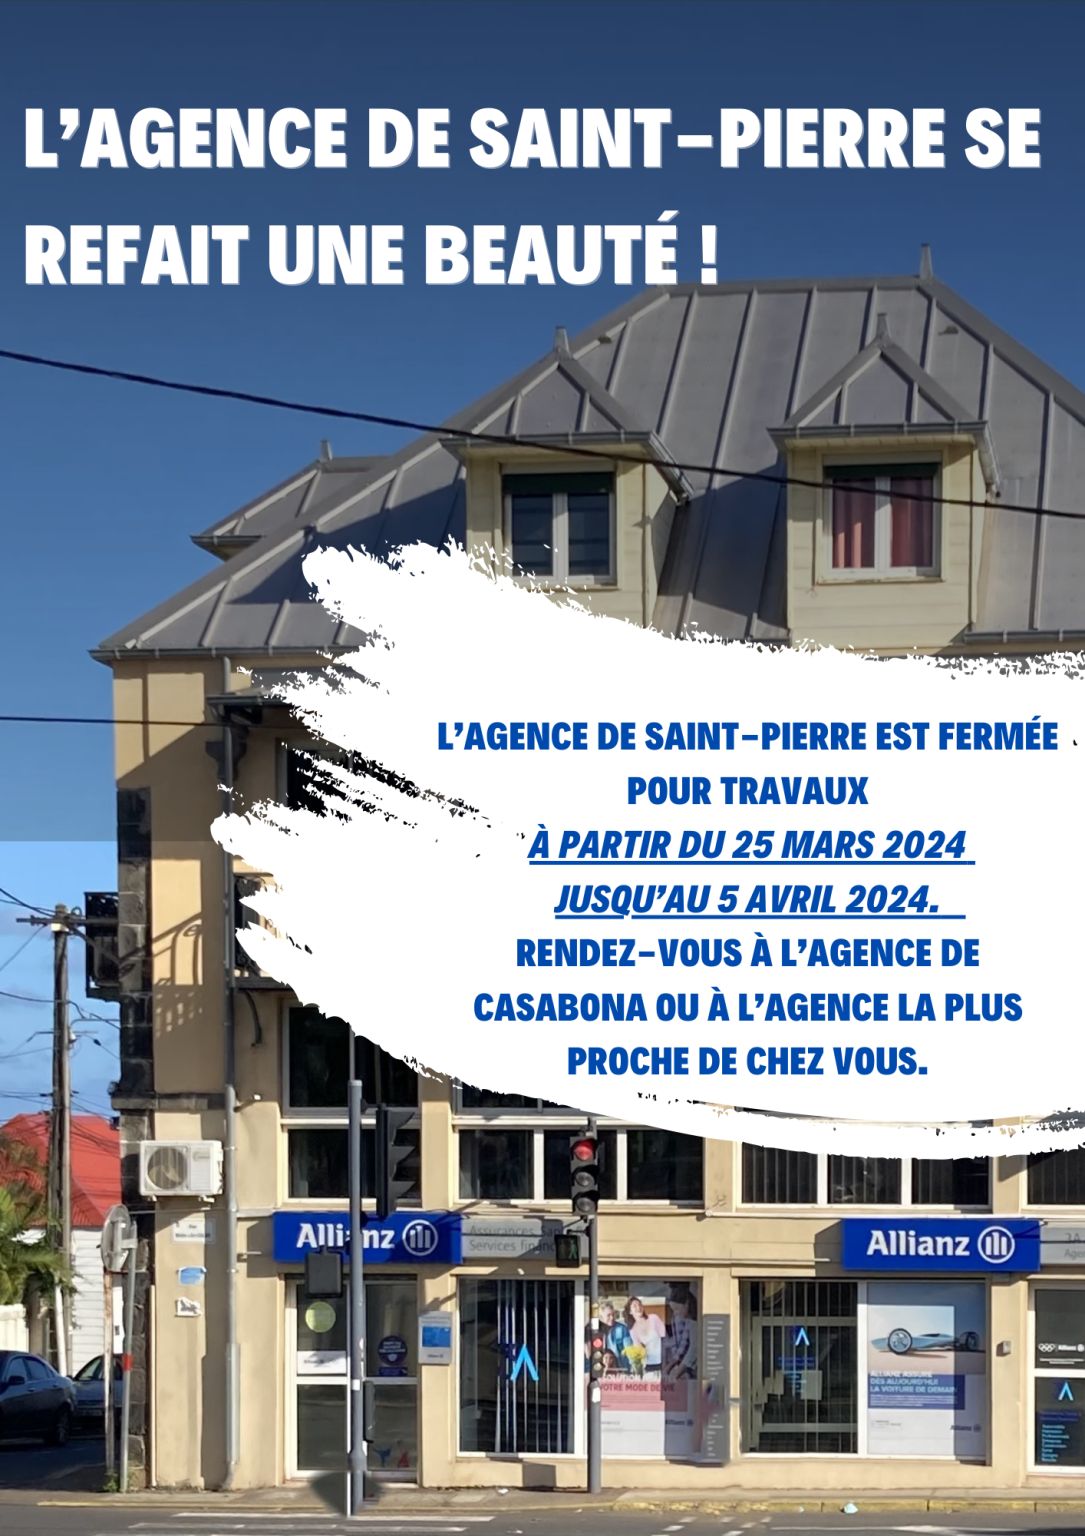 3A ASSURANCES ALLIANZ sur LinkedIn : L'agence de Saint-Pierre se fait ...